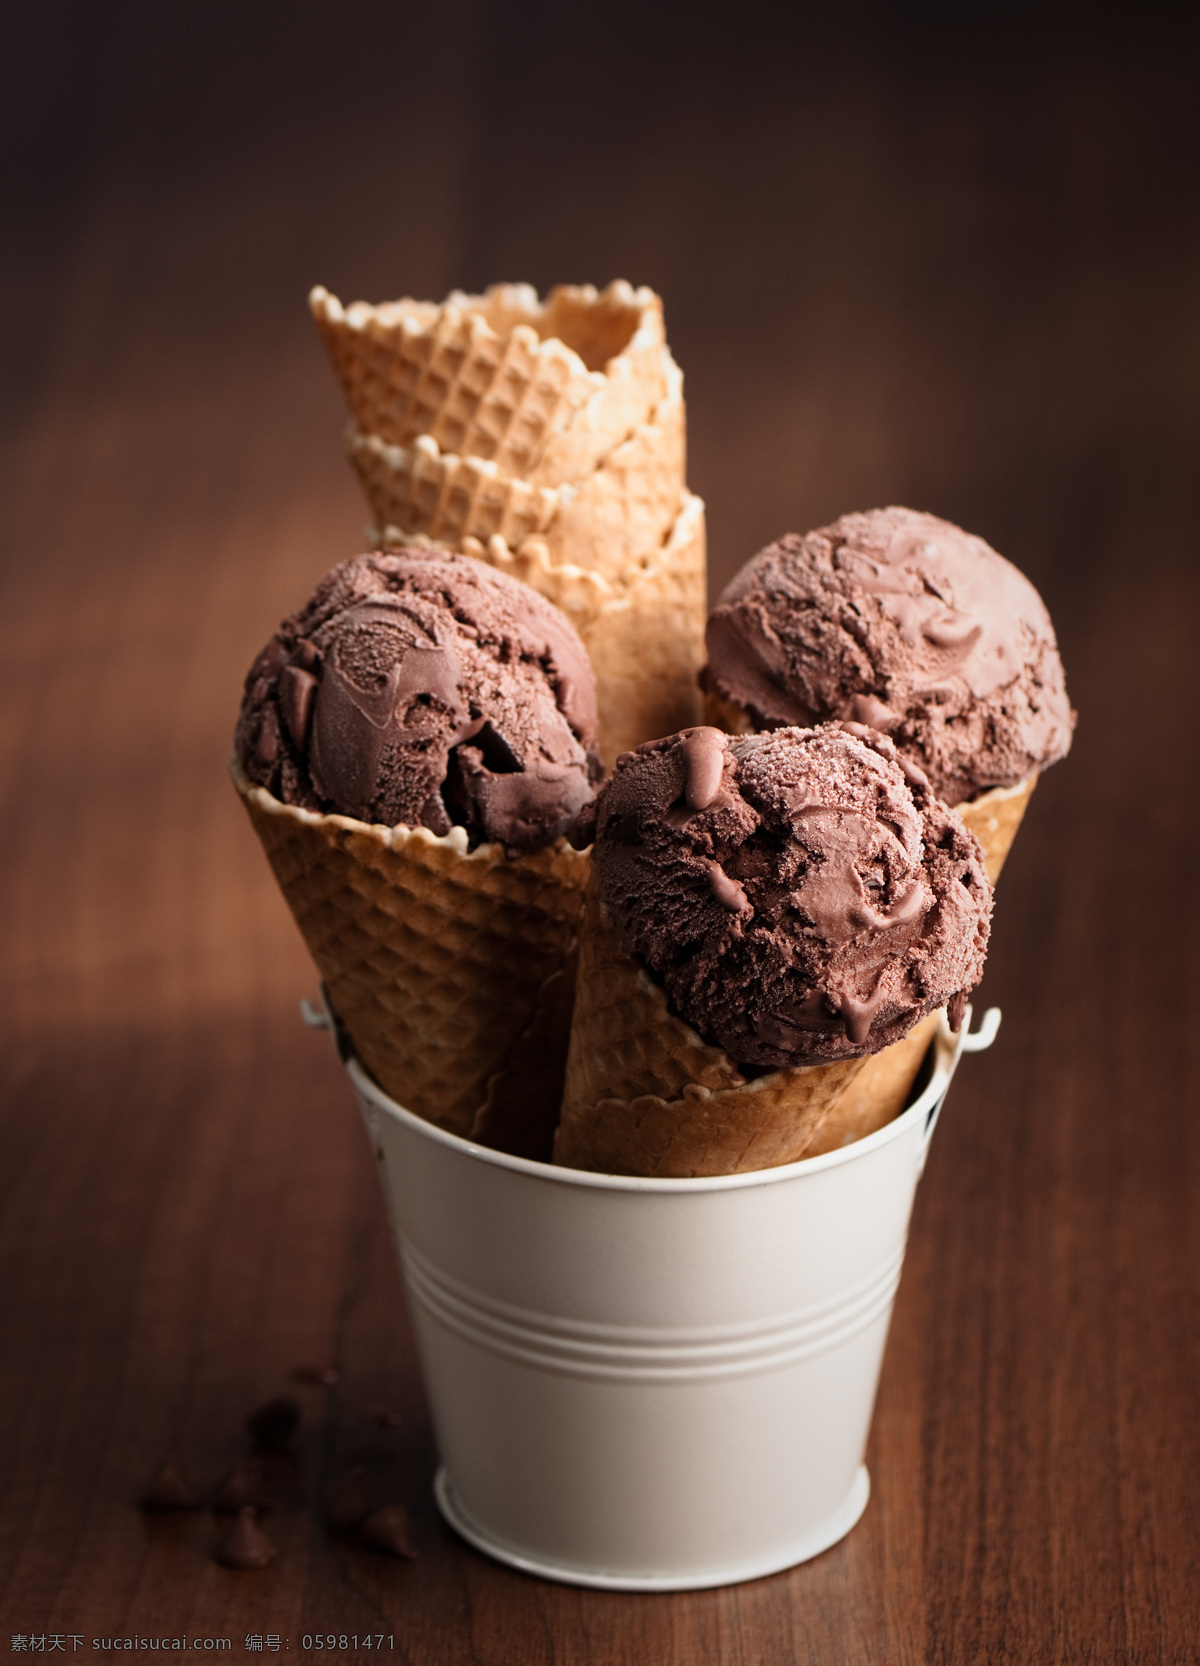 铁桶 里 巧克力 冰 激 淋 点心 甜食 美食 巧克力冰激淋 冷饮 其他类别 餐饮美食 黑色